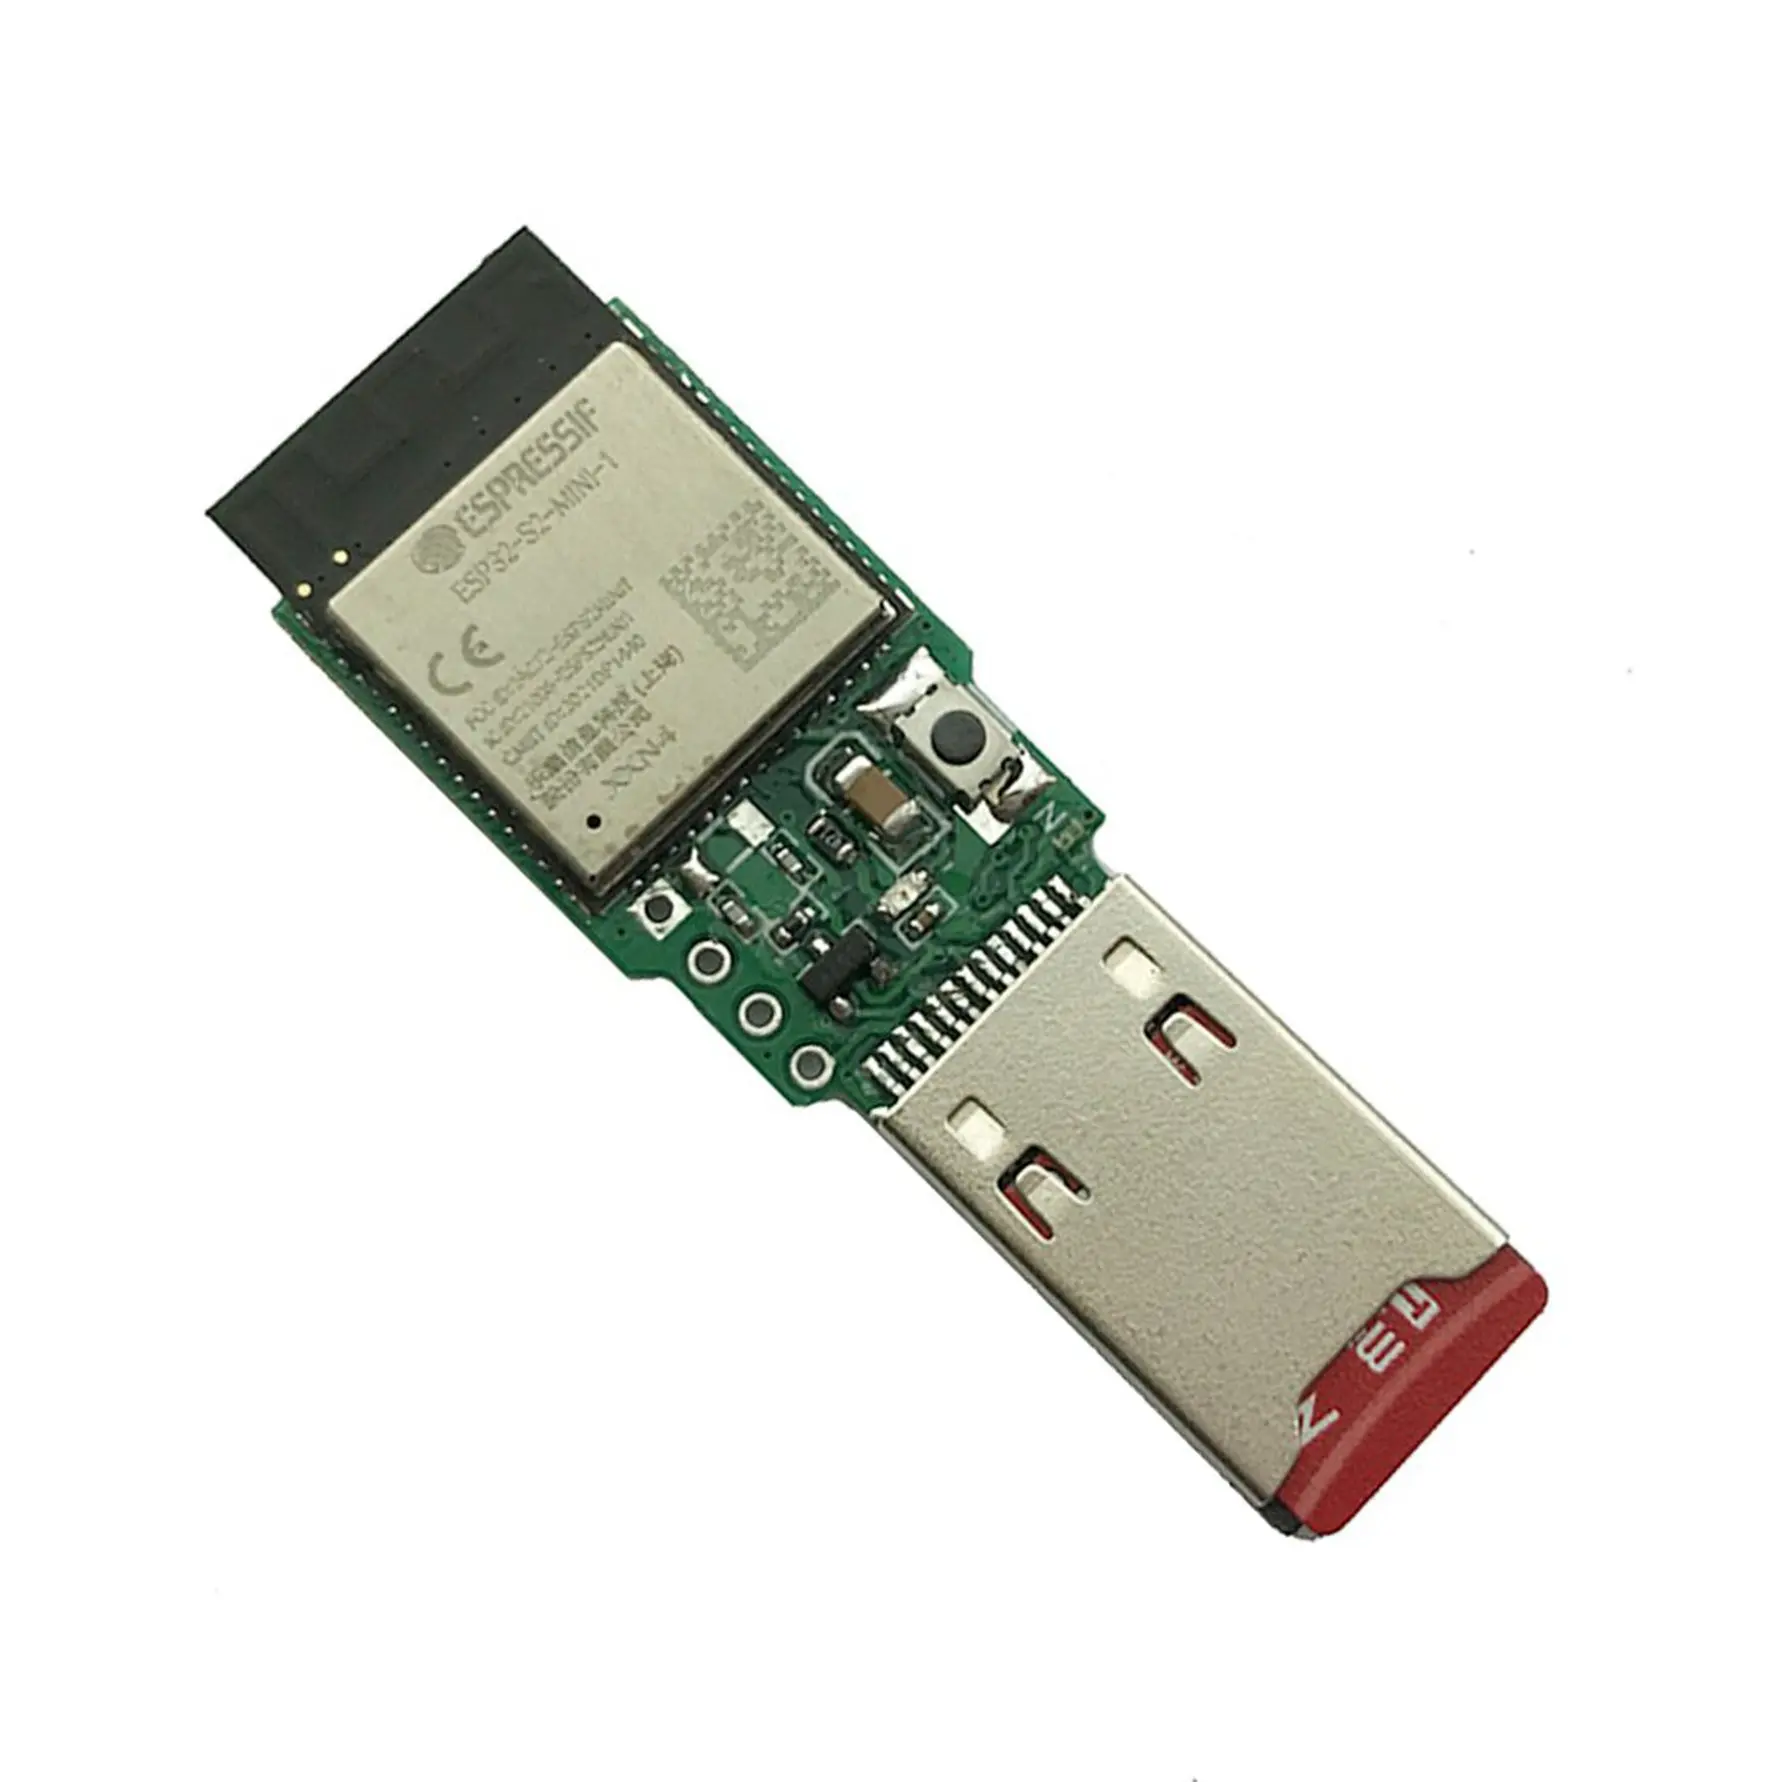 Injecteur HID WiFi Portable sans fil ESP32-S2, disque USB, pour clavier et souris